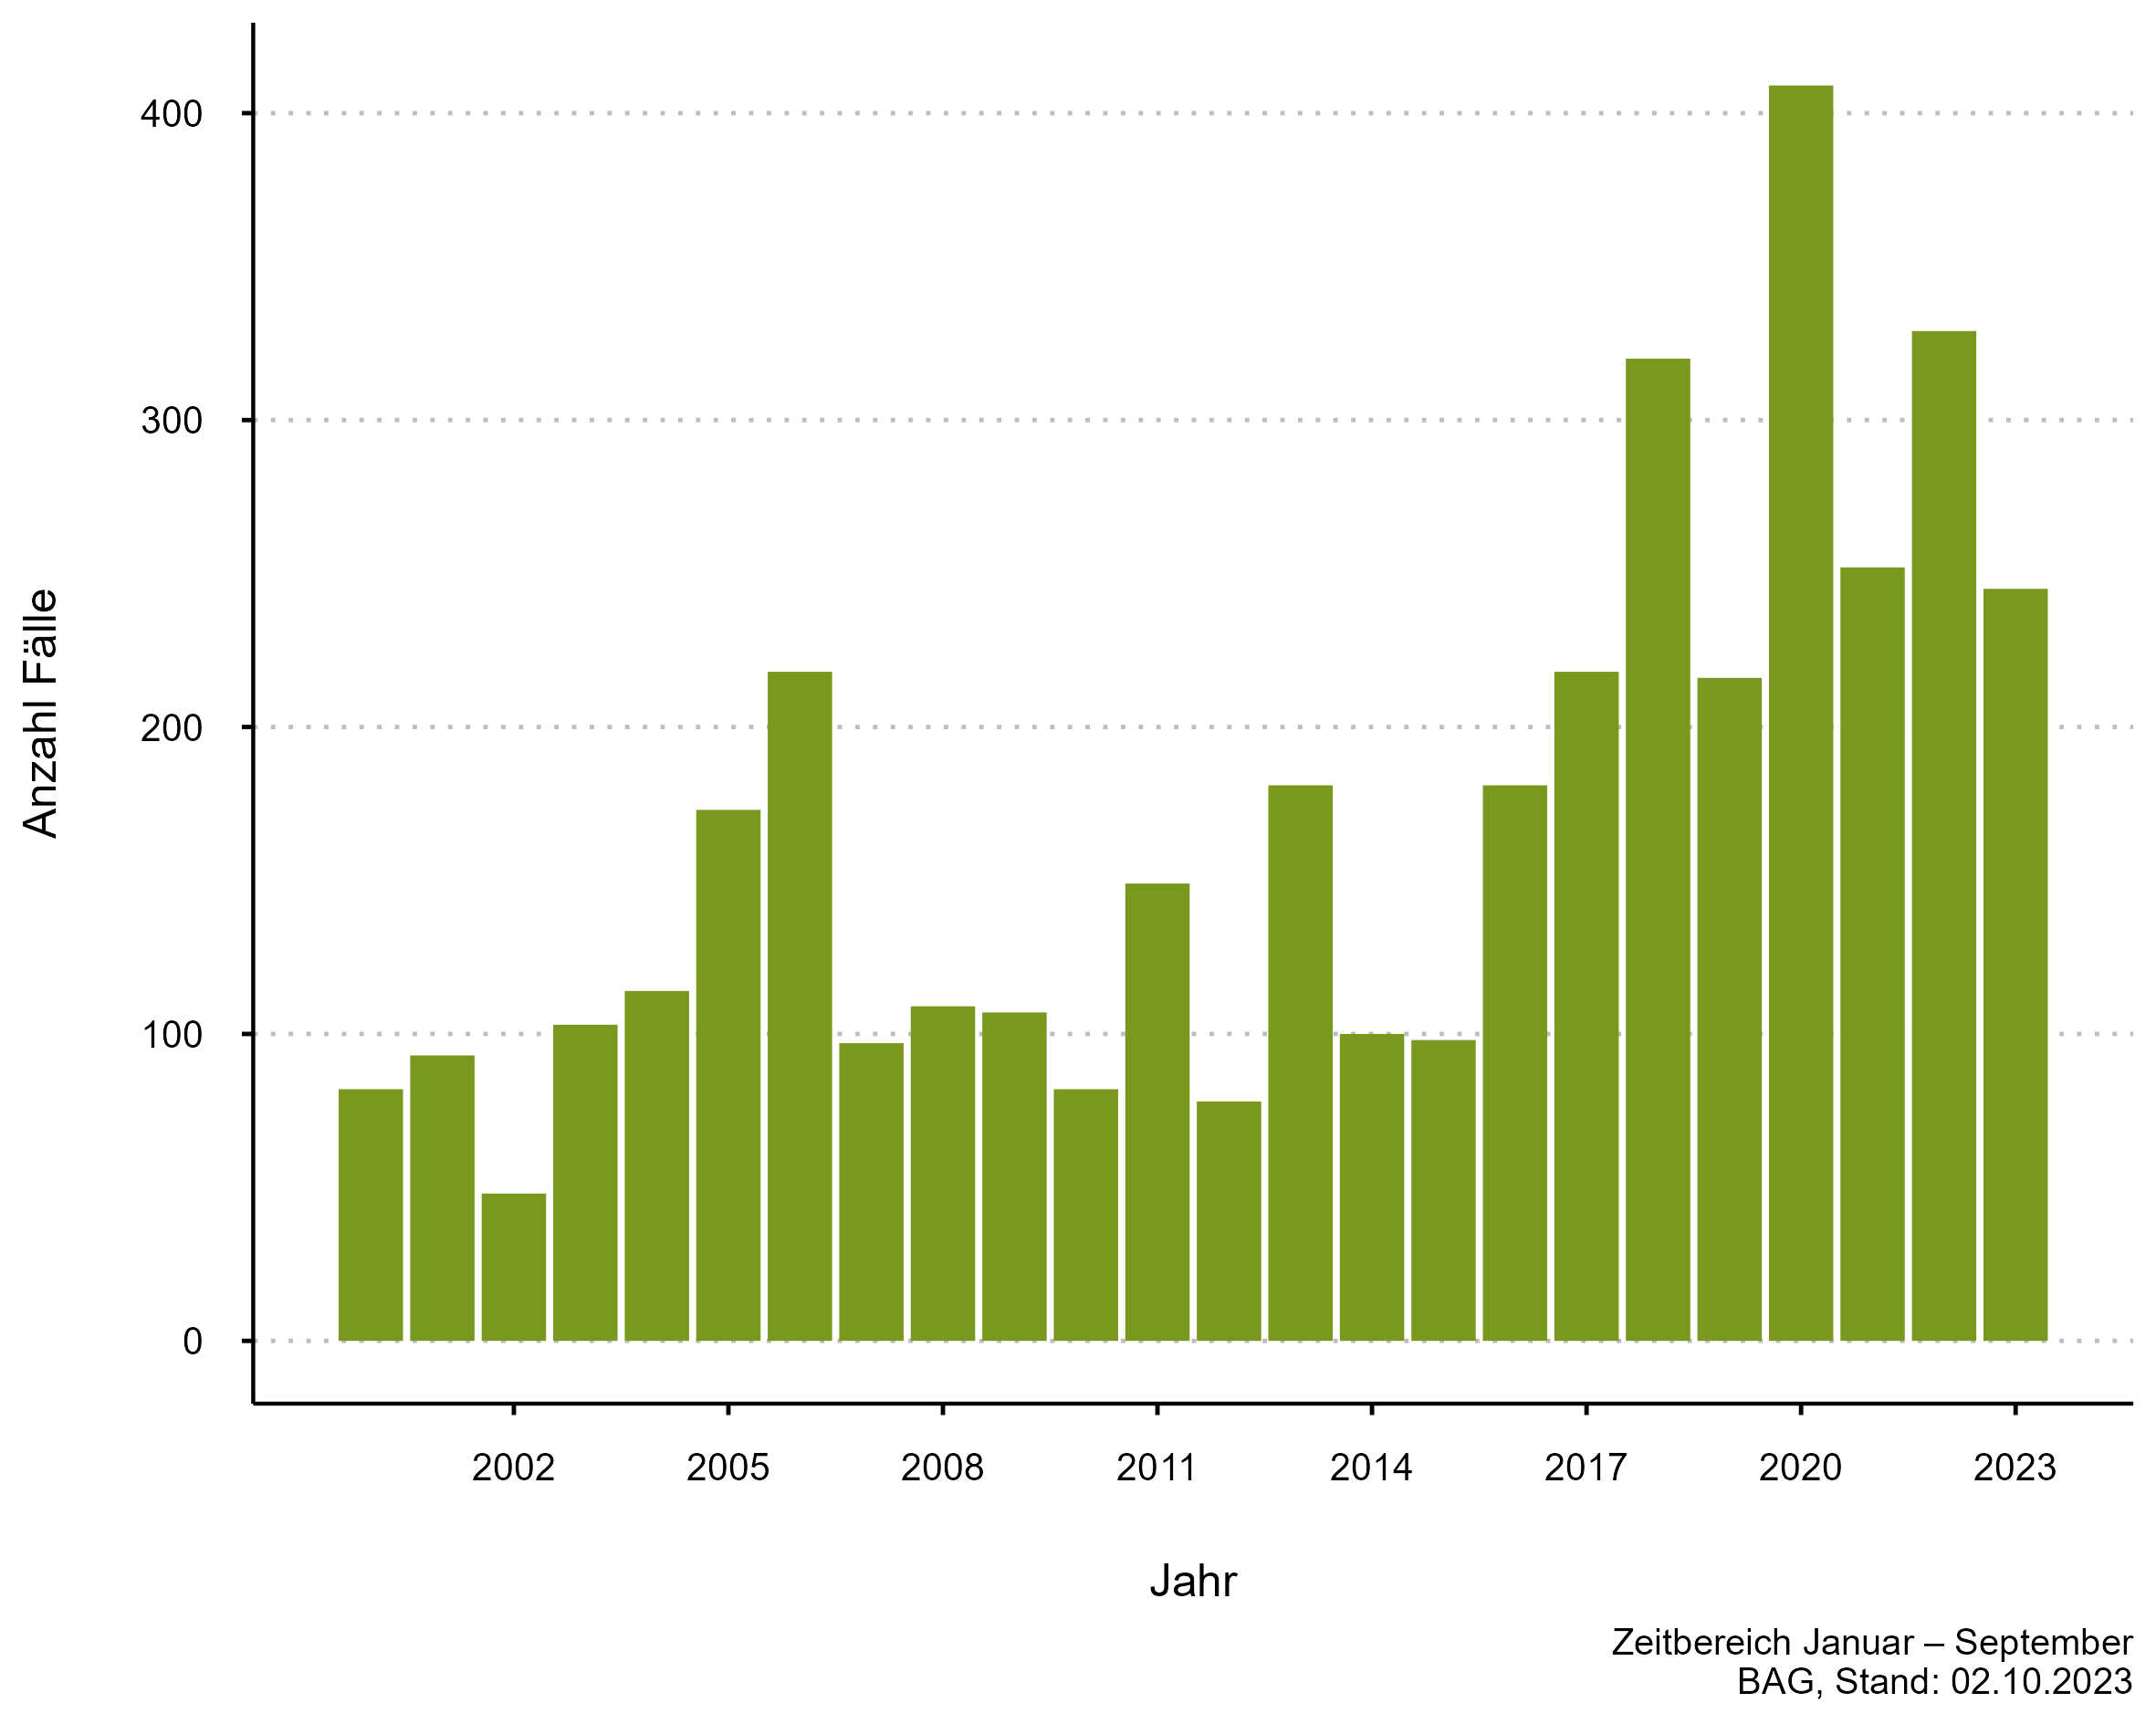 Abbildung 2: FSME-Fallzahlen jeweils kumuliert ab Jahresbeginn bis Ende August, 2000 – 2023 (zugehörige Daten in der Datentabelle Lagebericht Zecken auf dieser Seite)